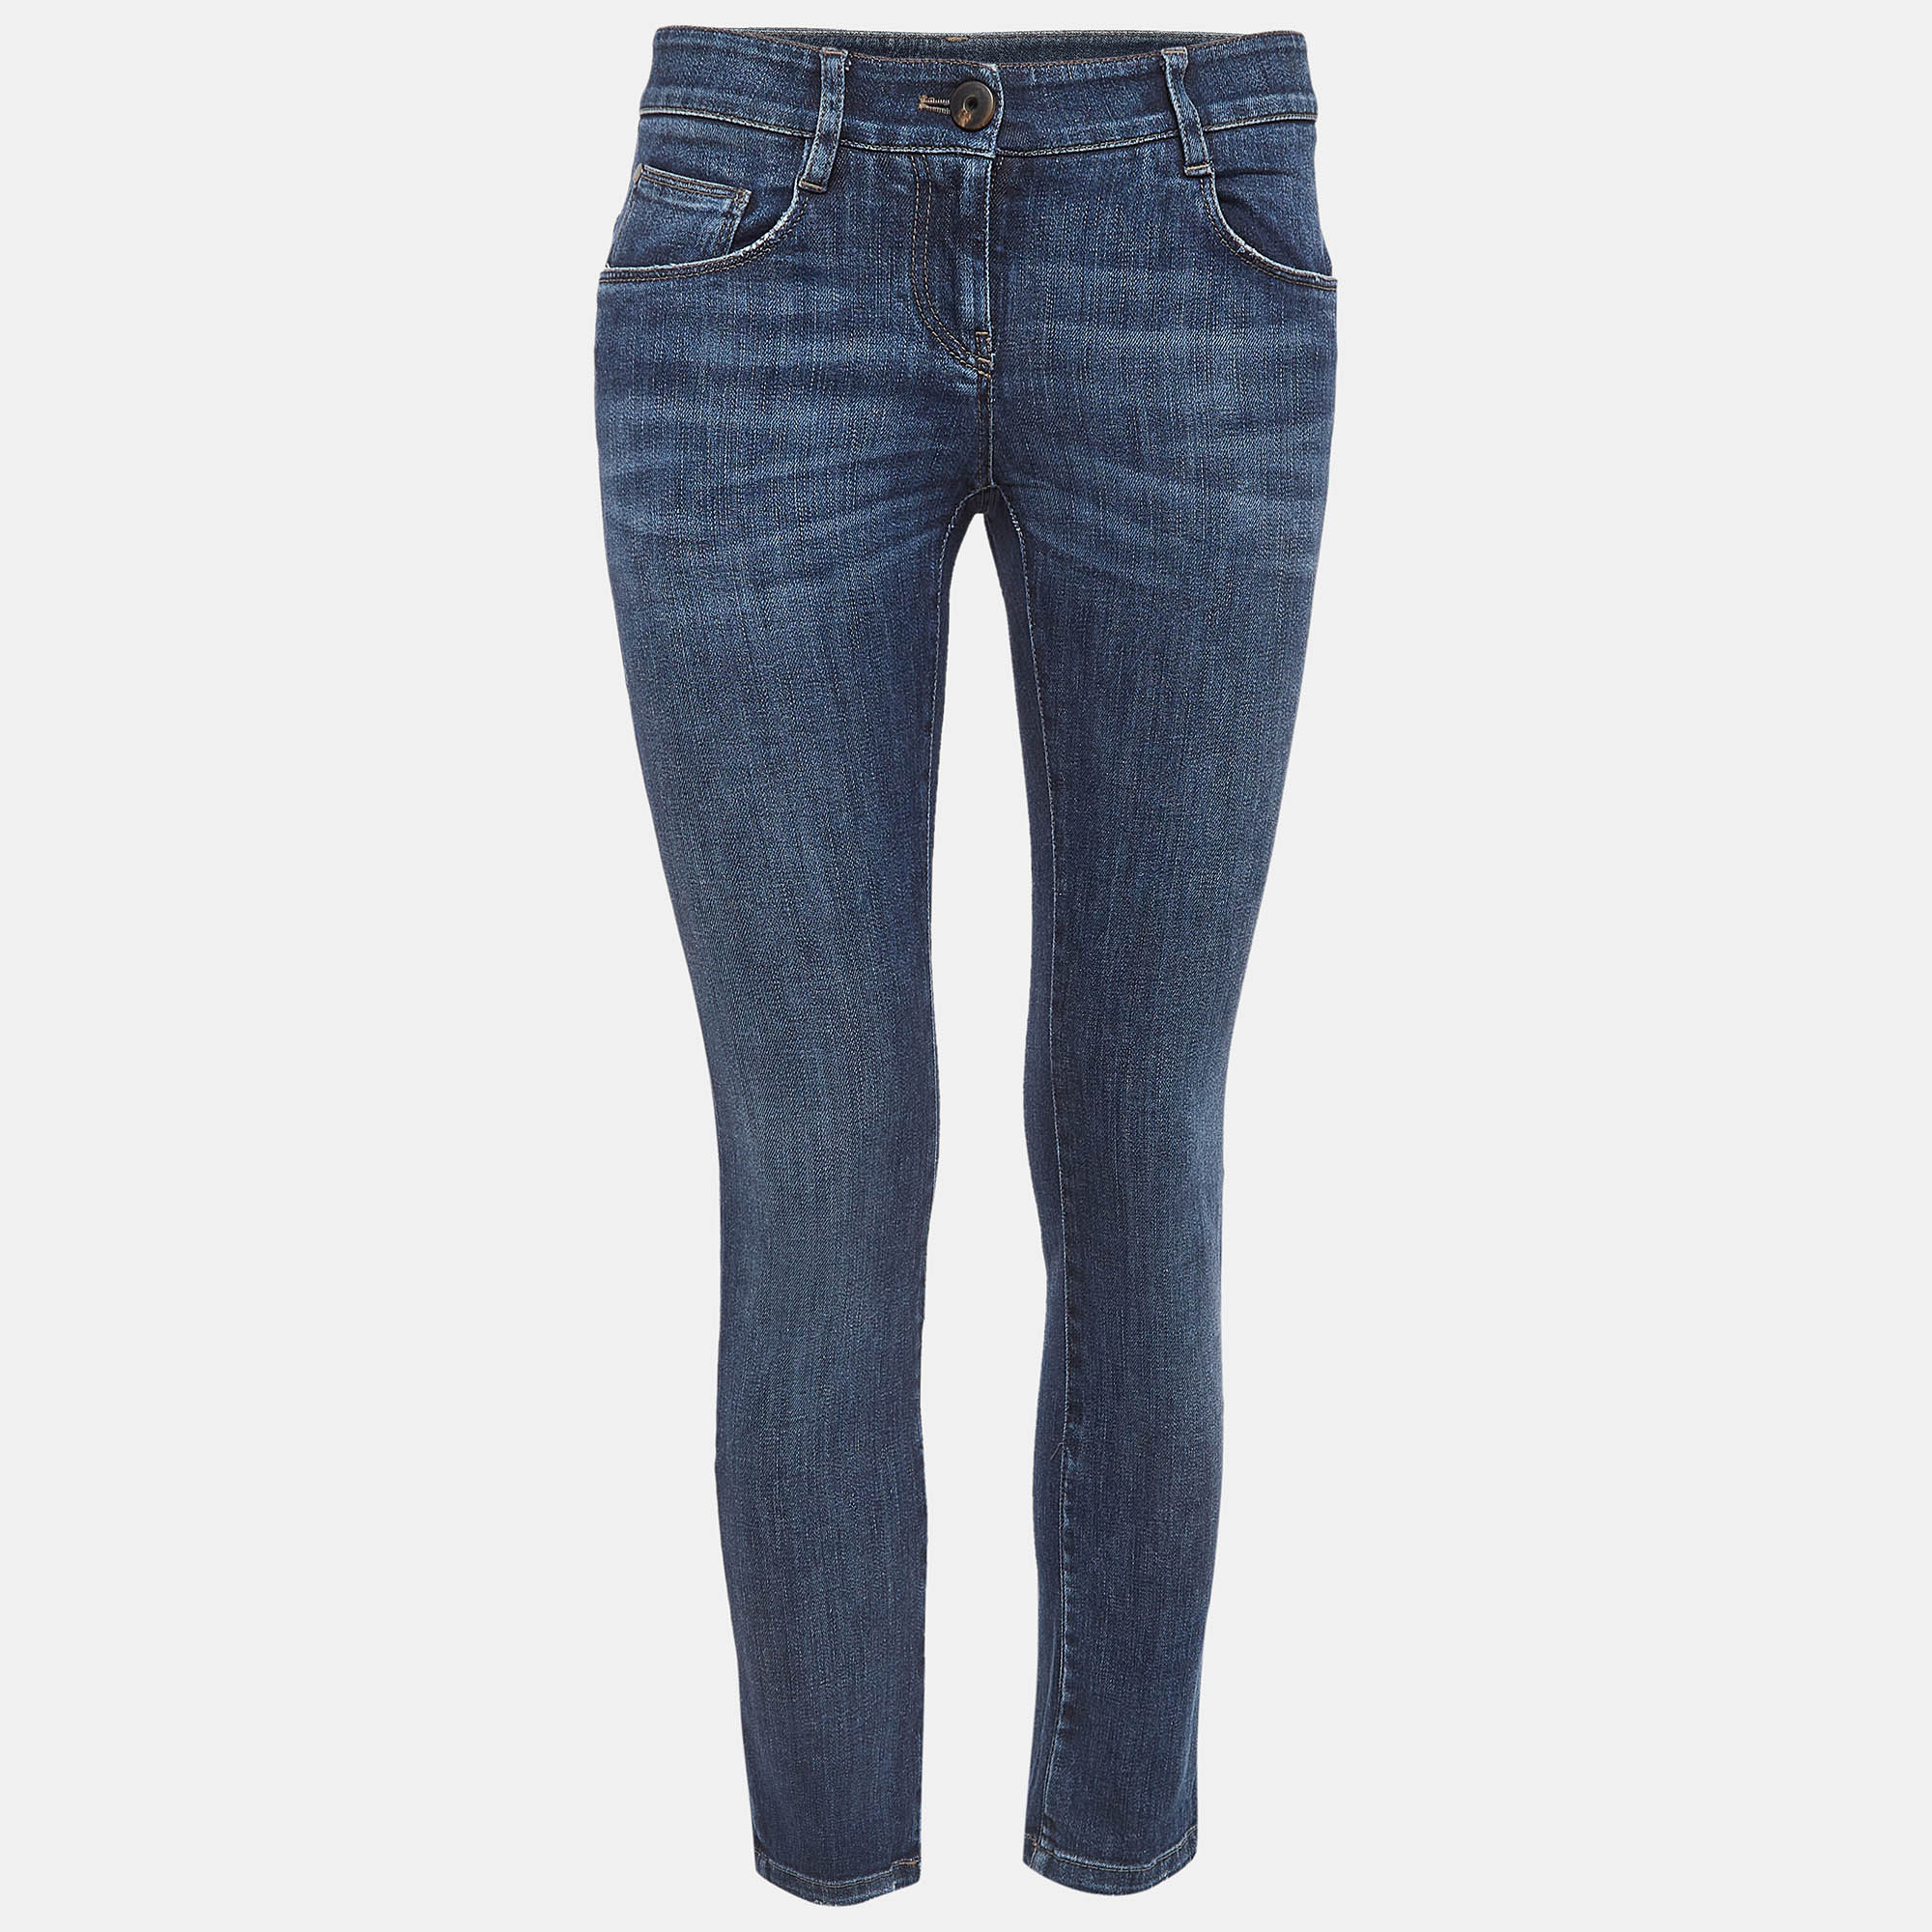 

Brunello Cucinelli Navy Blue Denim Skinny Jeans S Waist 28"